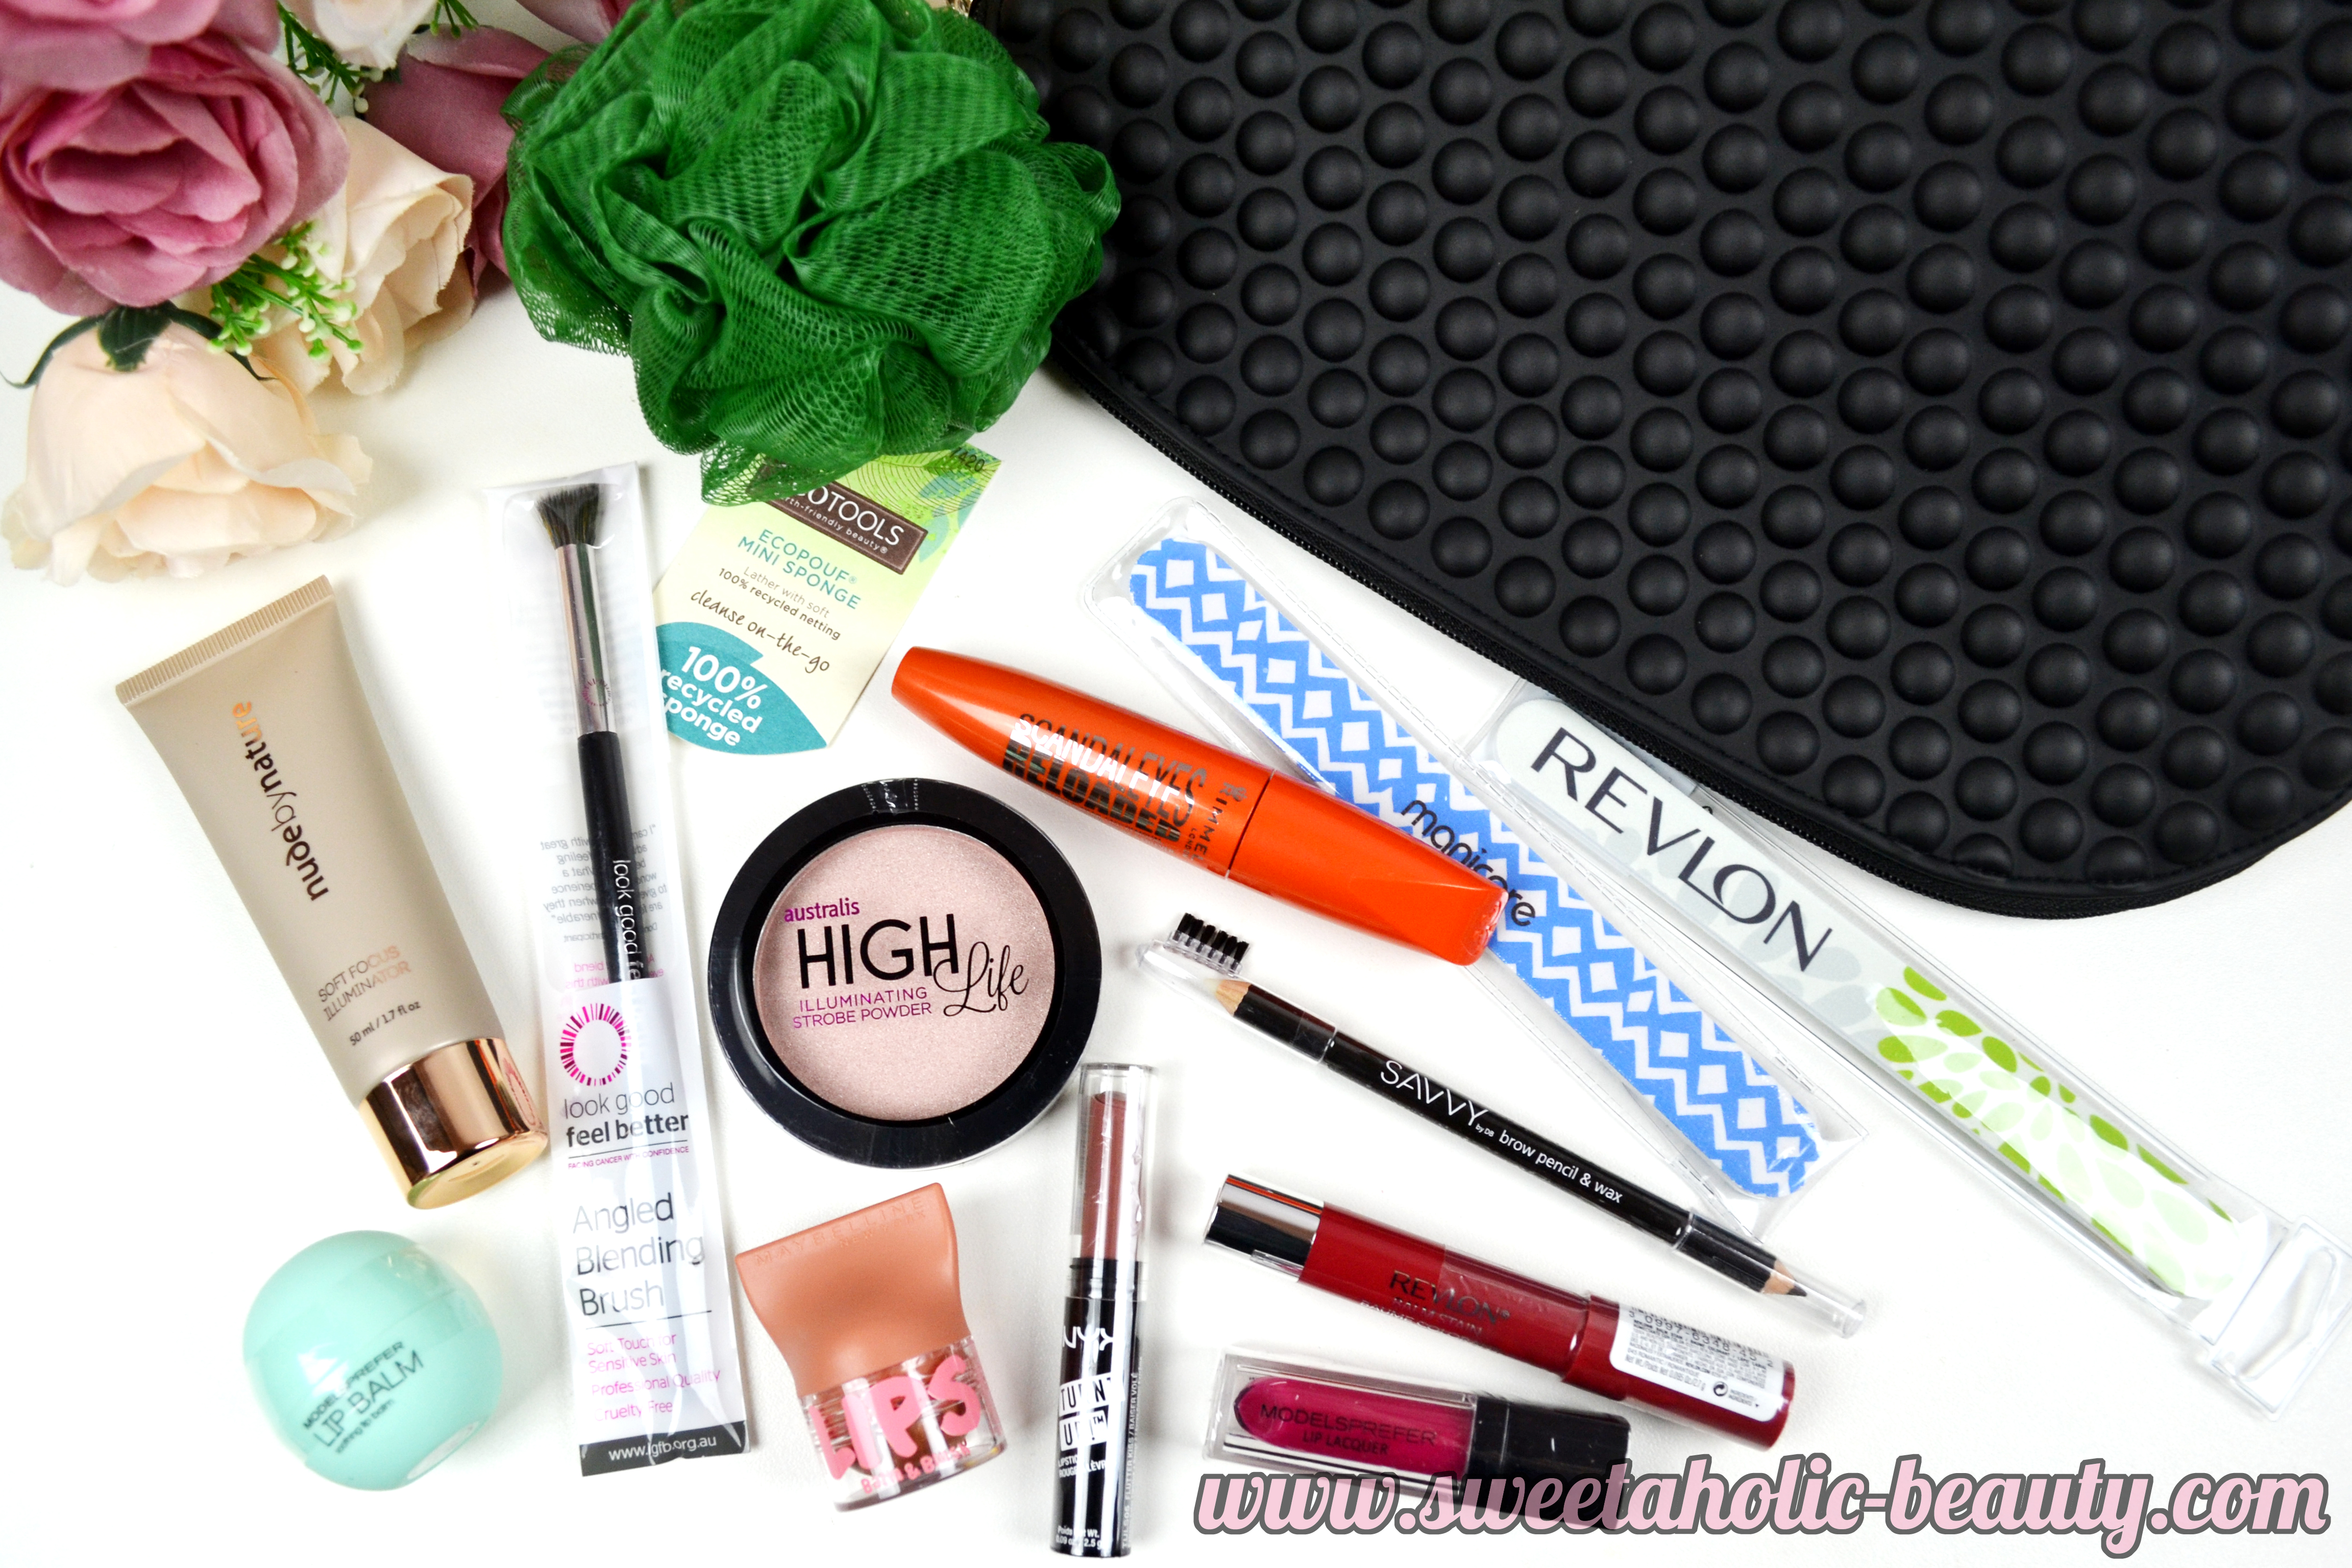 Priceline Your Cosmetic Gift Bag - Sweetaholic Beauty